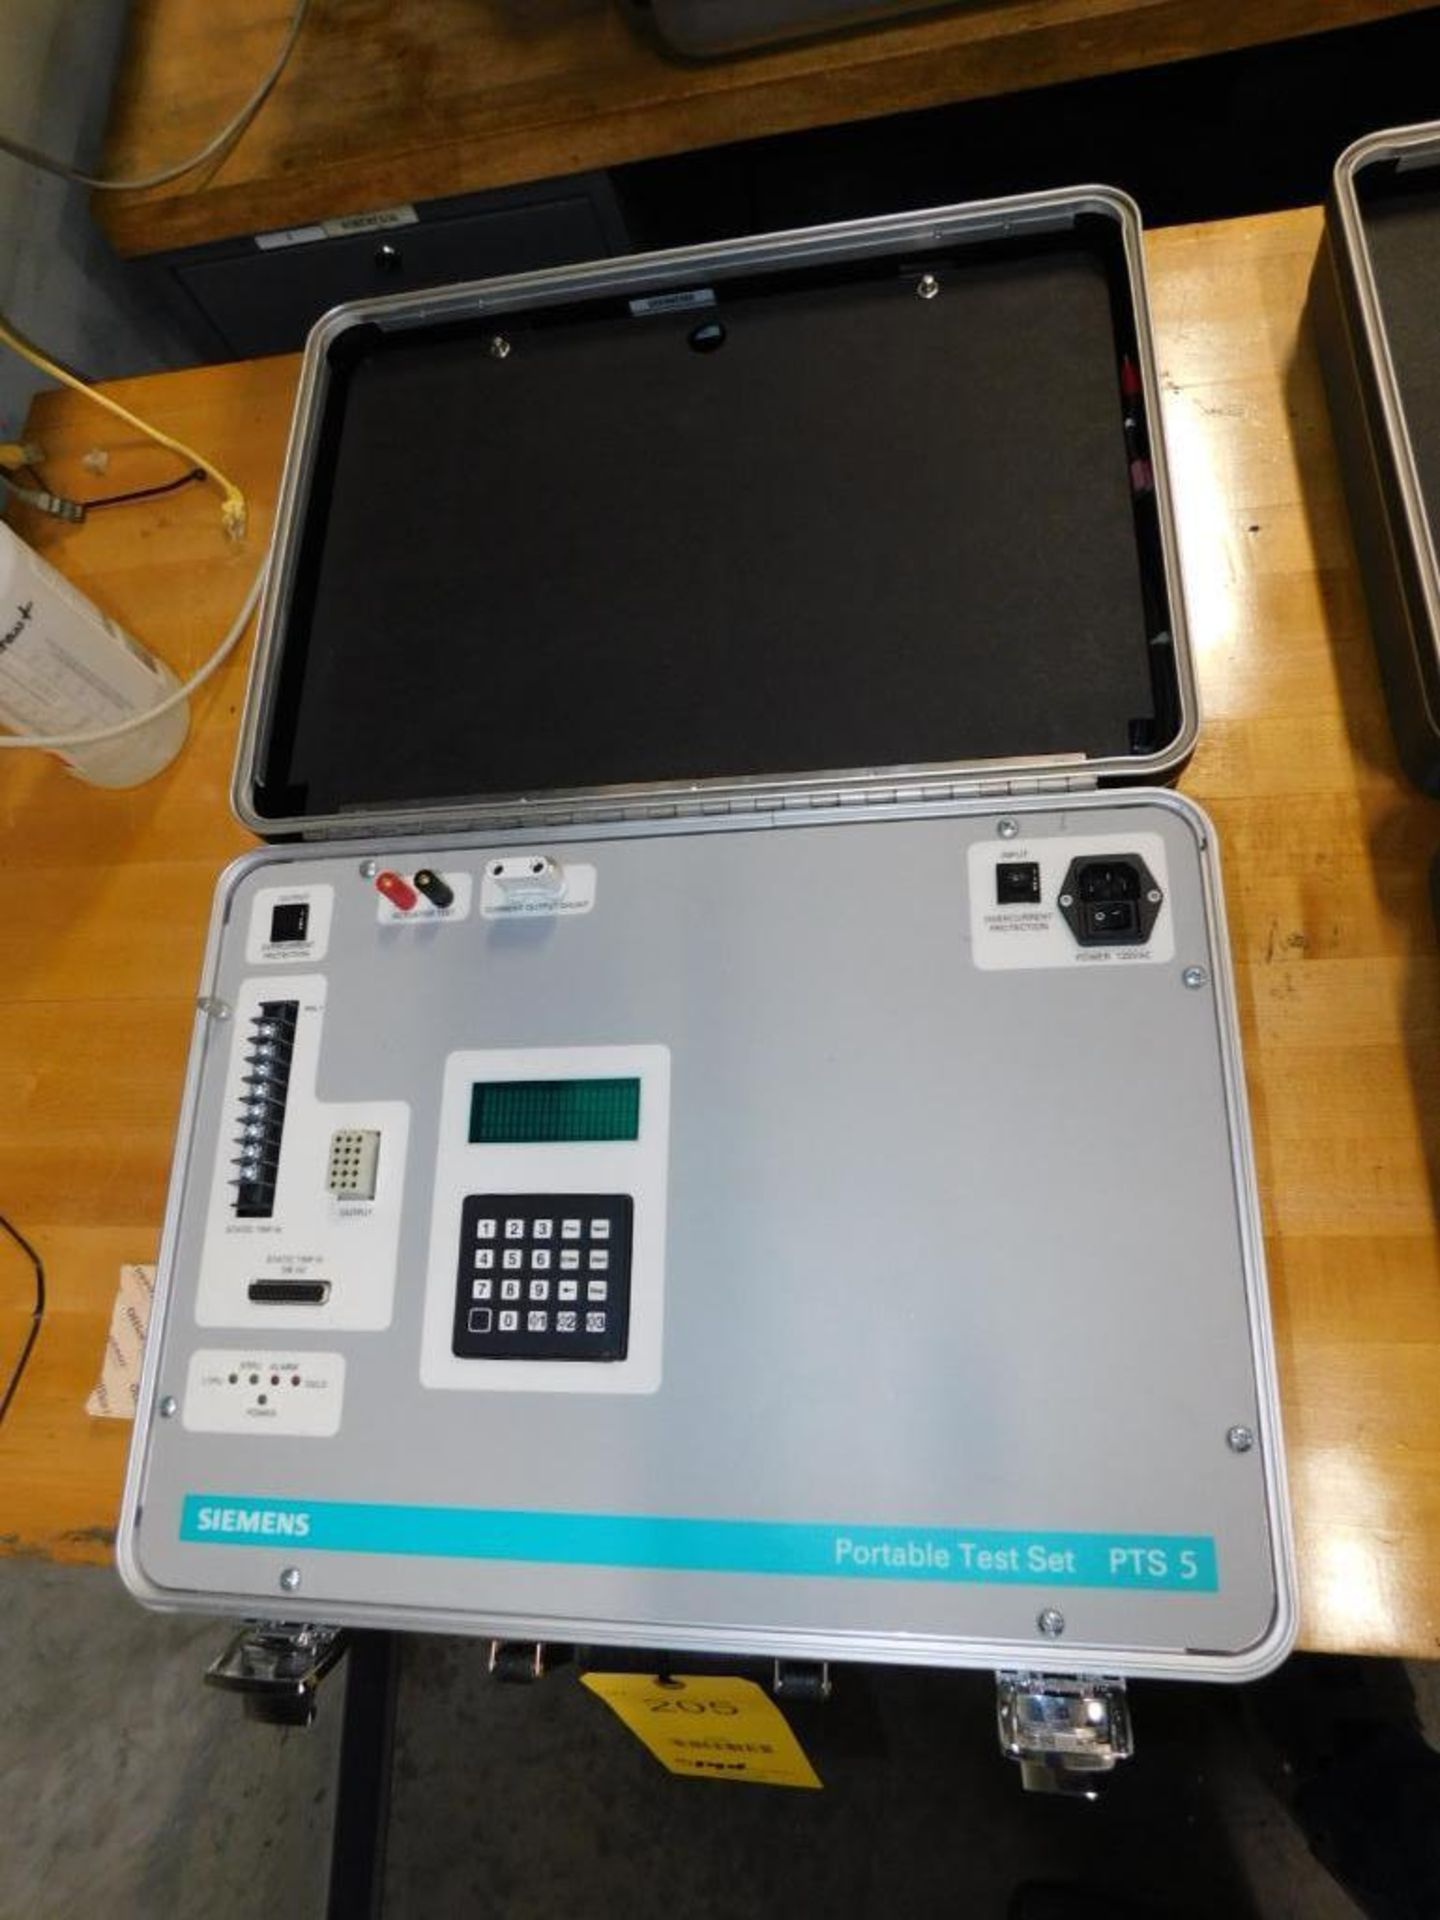 Siemens PTS 5 Portable Test Set (LOCATION: IN MACHINE SHOP, 2ND FLOOR)